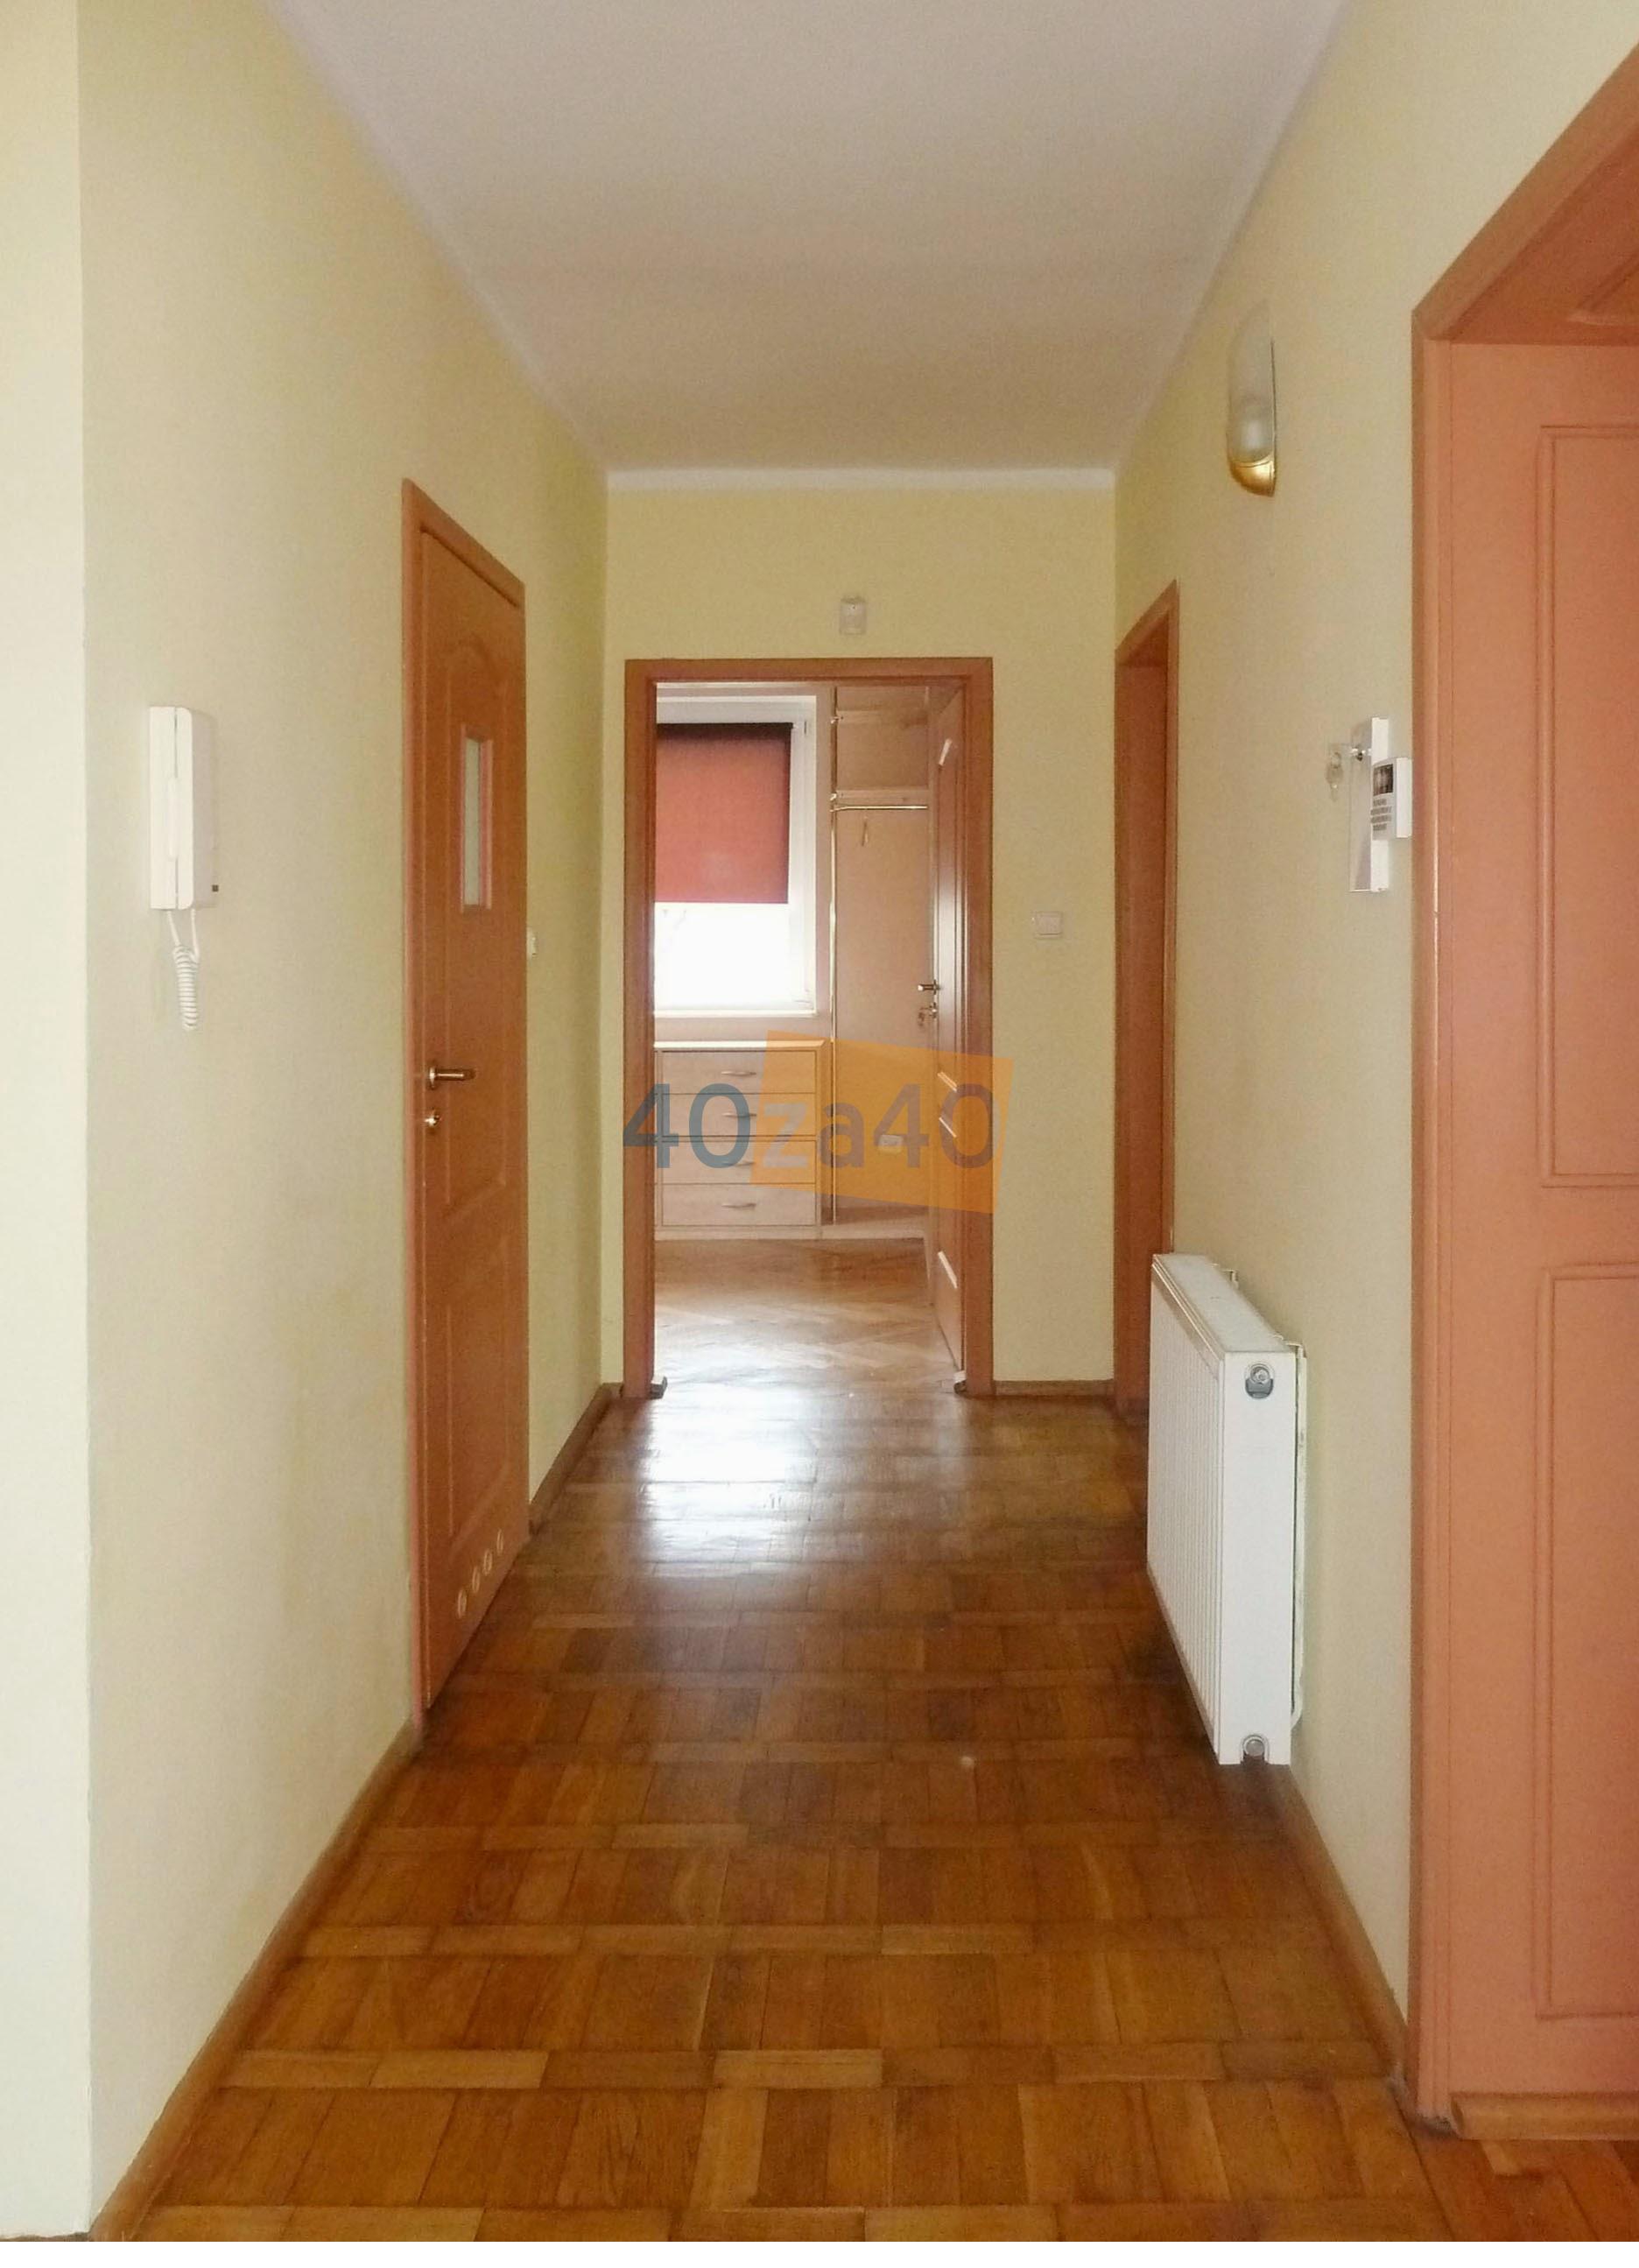 Dom na sprzedaż, powierzchnia: 1080 m2, pokoje: 6, cena: 1 230 000,00 PLN, Gdynia, kontakt: 602 270 796